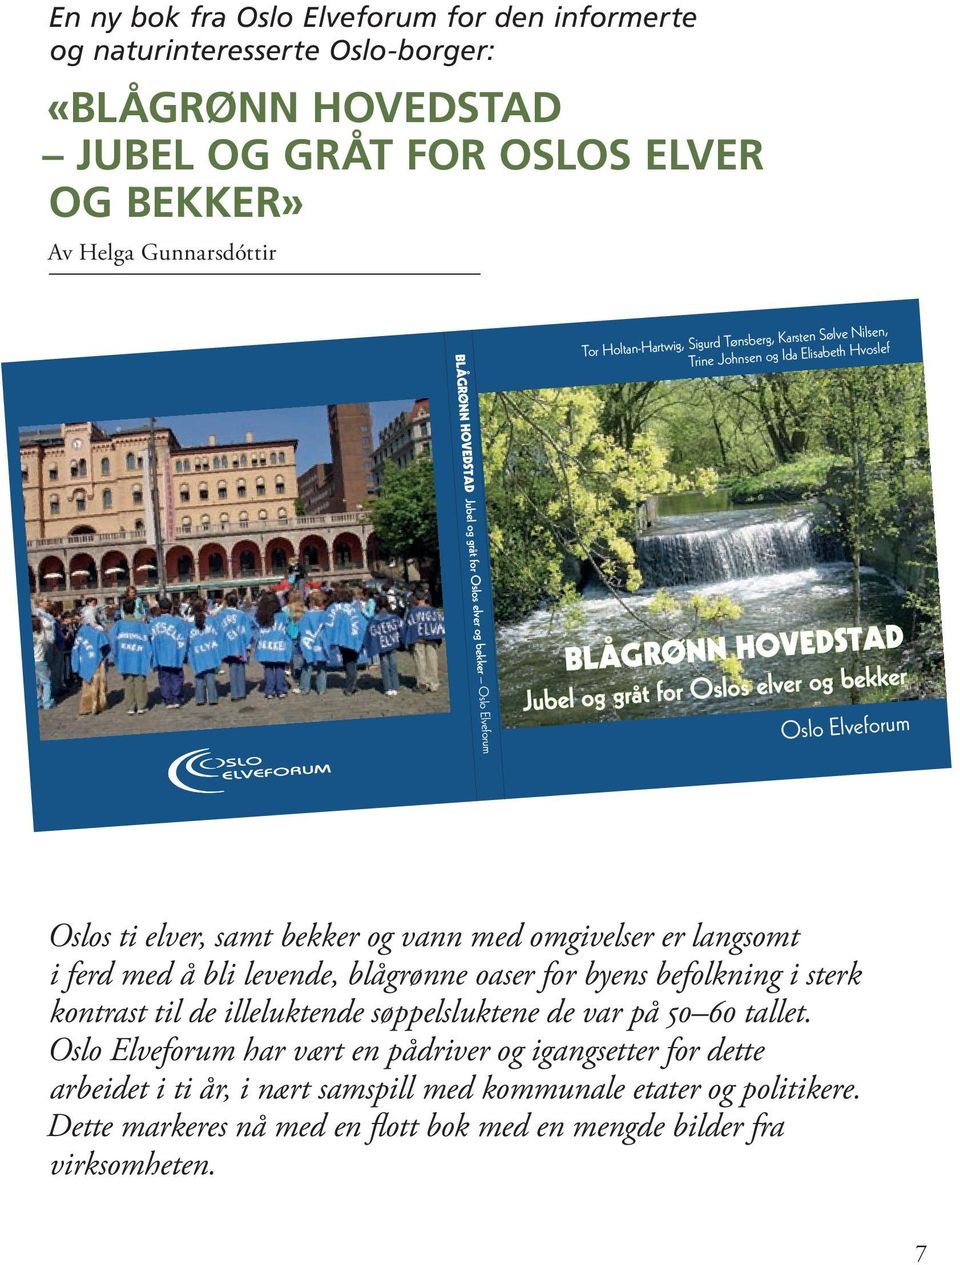 bekker Oslo Elveforum Oslos ti elver, samt bekker og vann med omgivelser er langsomt i ferd med å bli levende, blågrønne oaser for byens befolkning i sterk kontrast til de illeluktende søppelsluktene